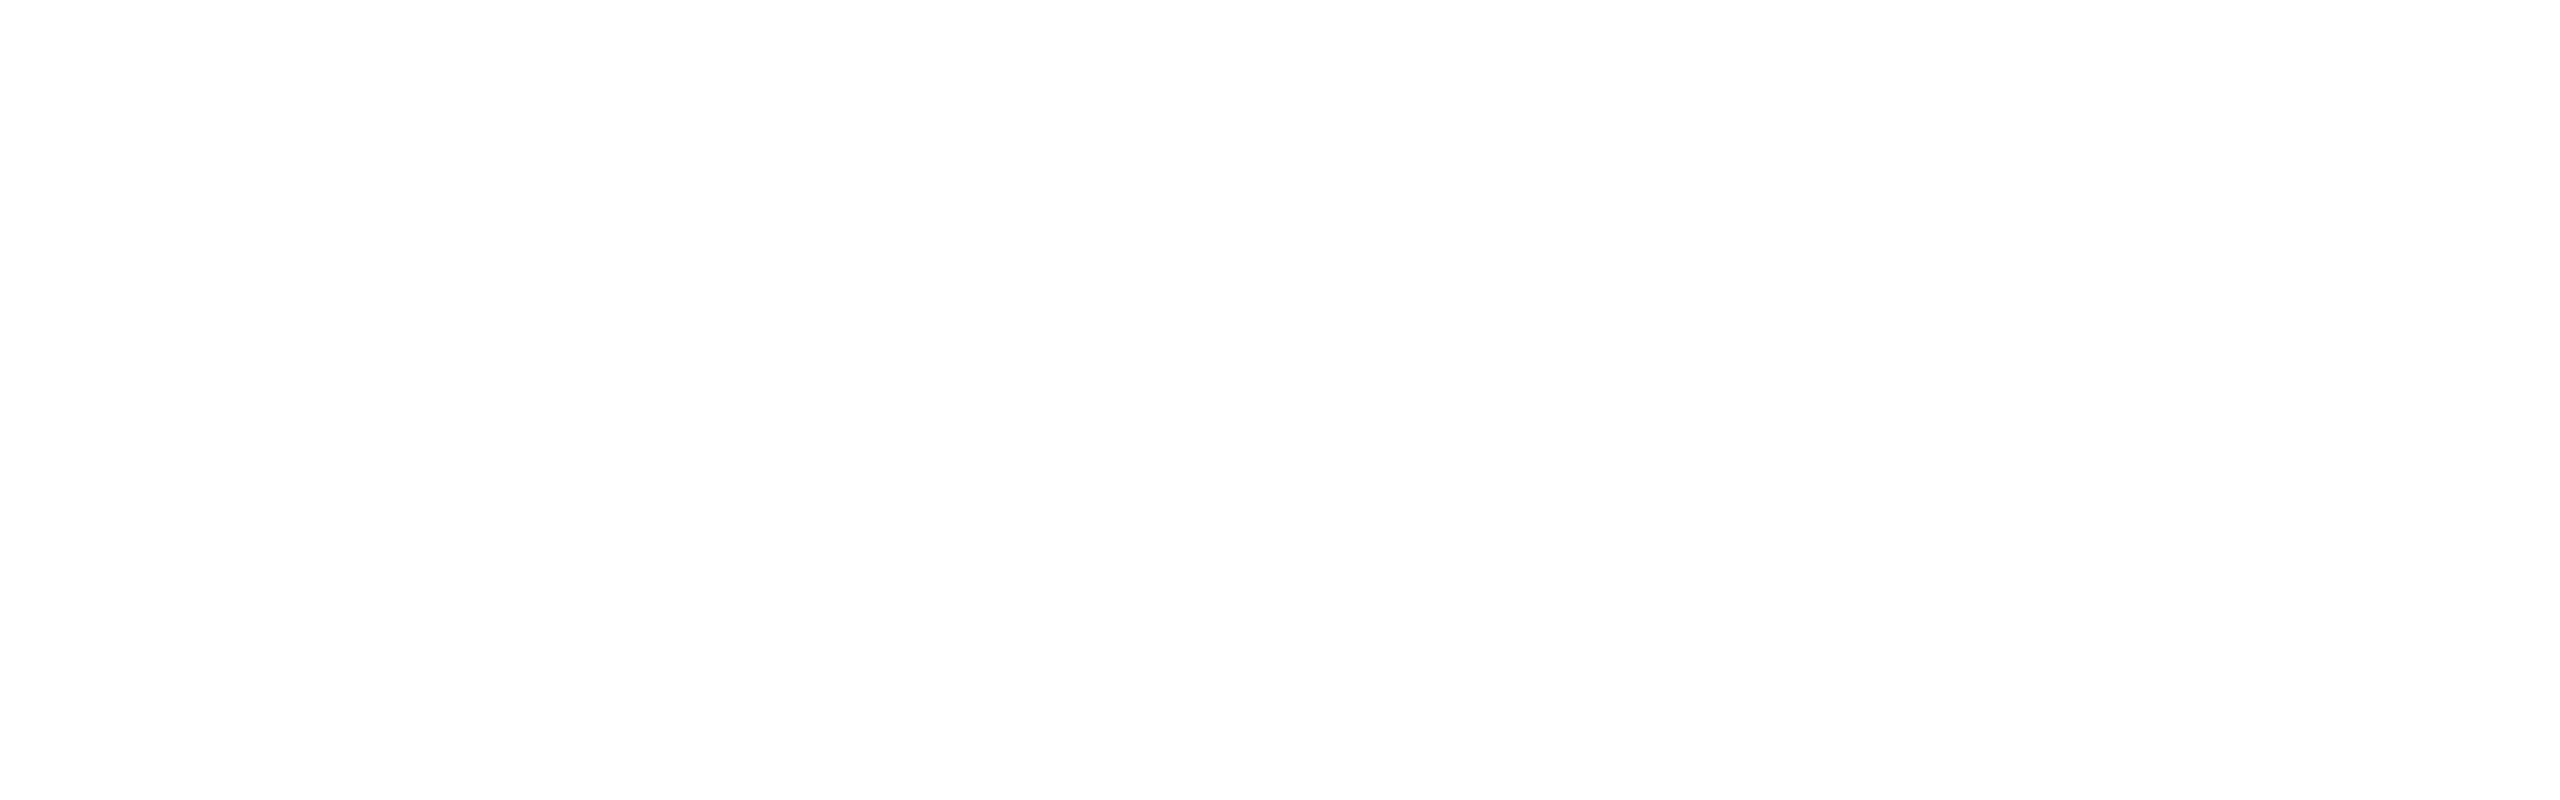 Savannah Backpack Mission